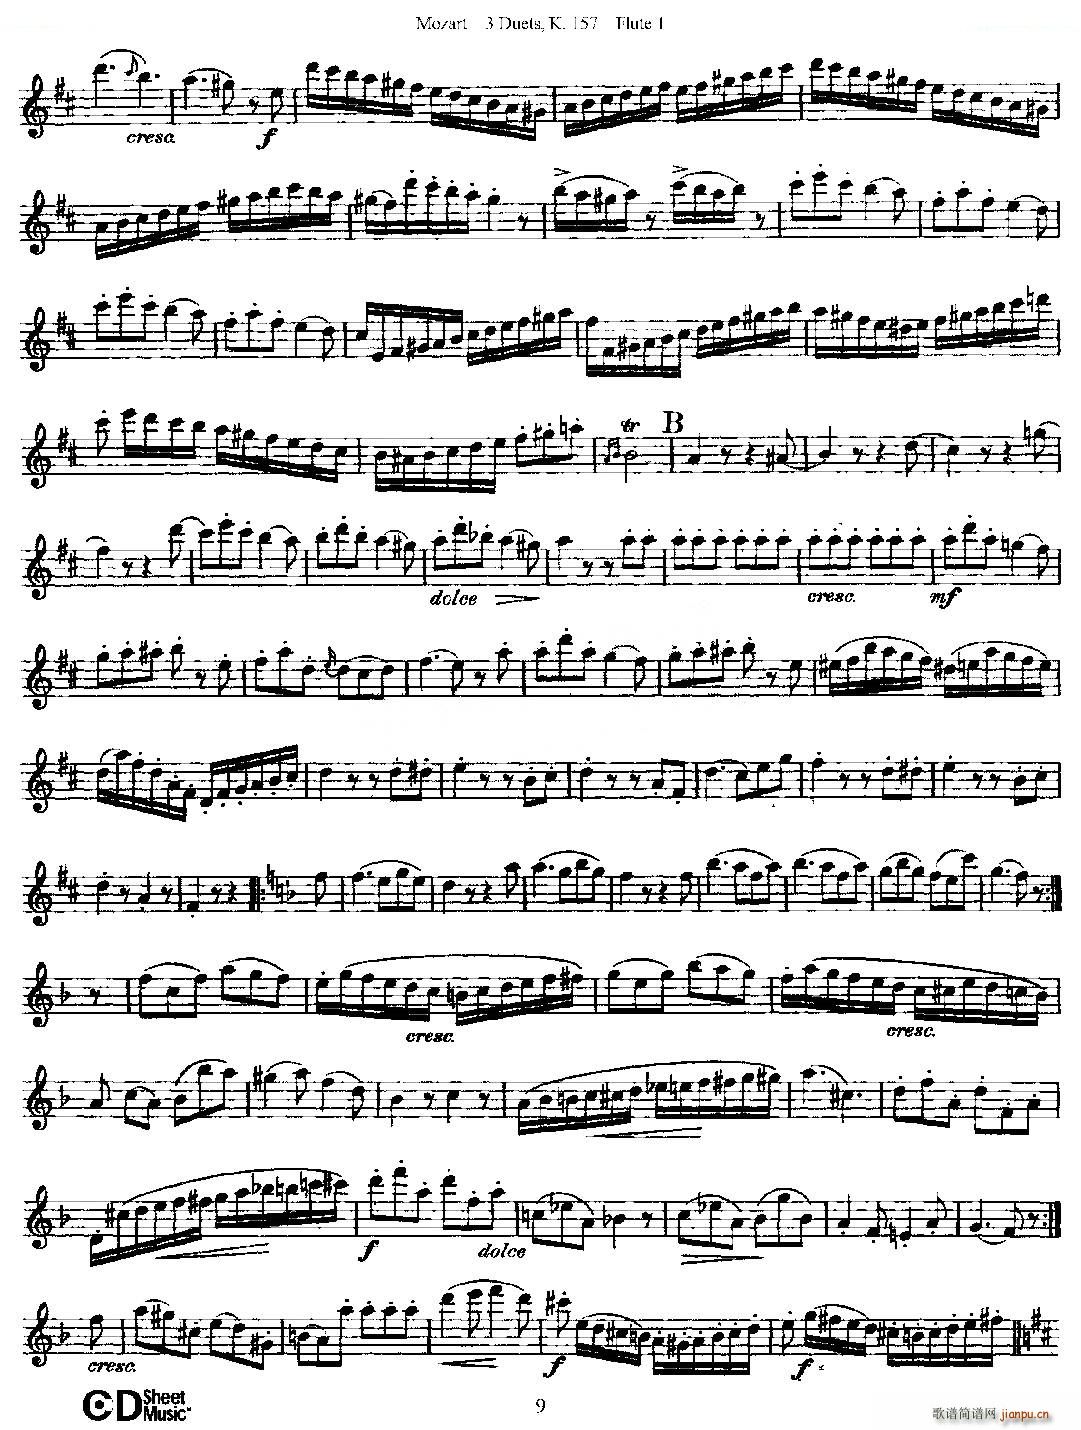 3 Duets K 157 之第一长笛 二重奏三首 K157号 铜管(笛箫谱)9